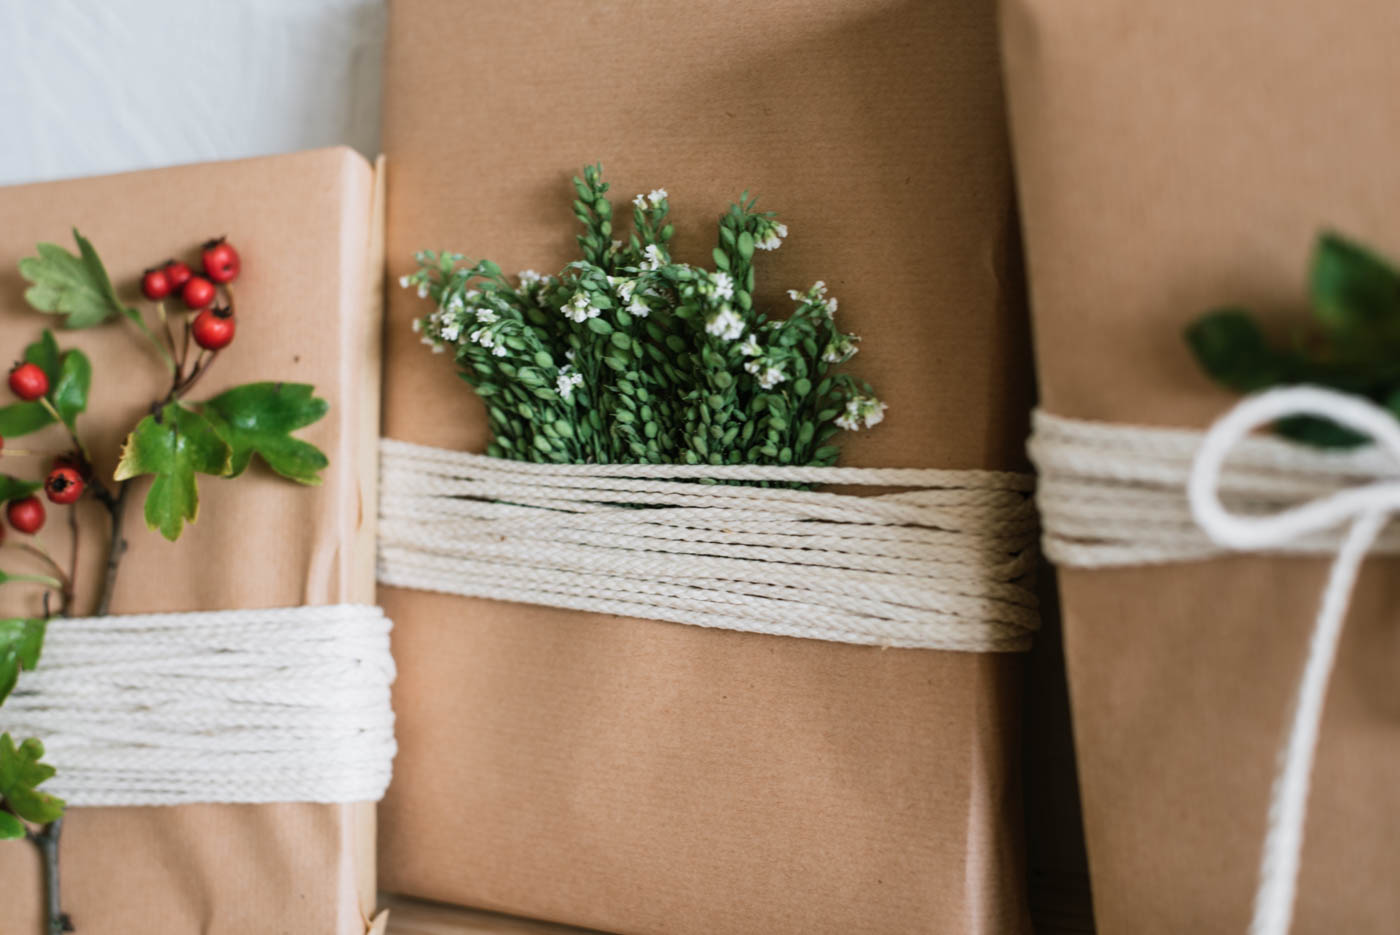 DIY Geschenke herbstlich verpacken mit Hagebutten, Zweigen und Gräsern. Geburtstagskinder im Herbst überraschen. 3 schnelle DIY Ideen